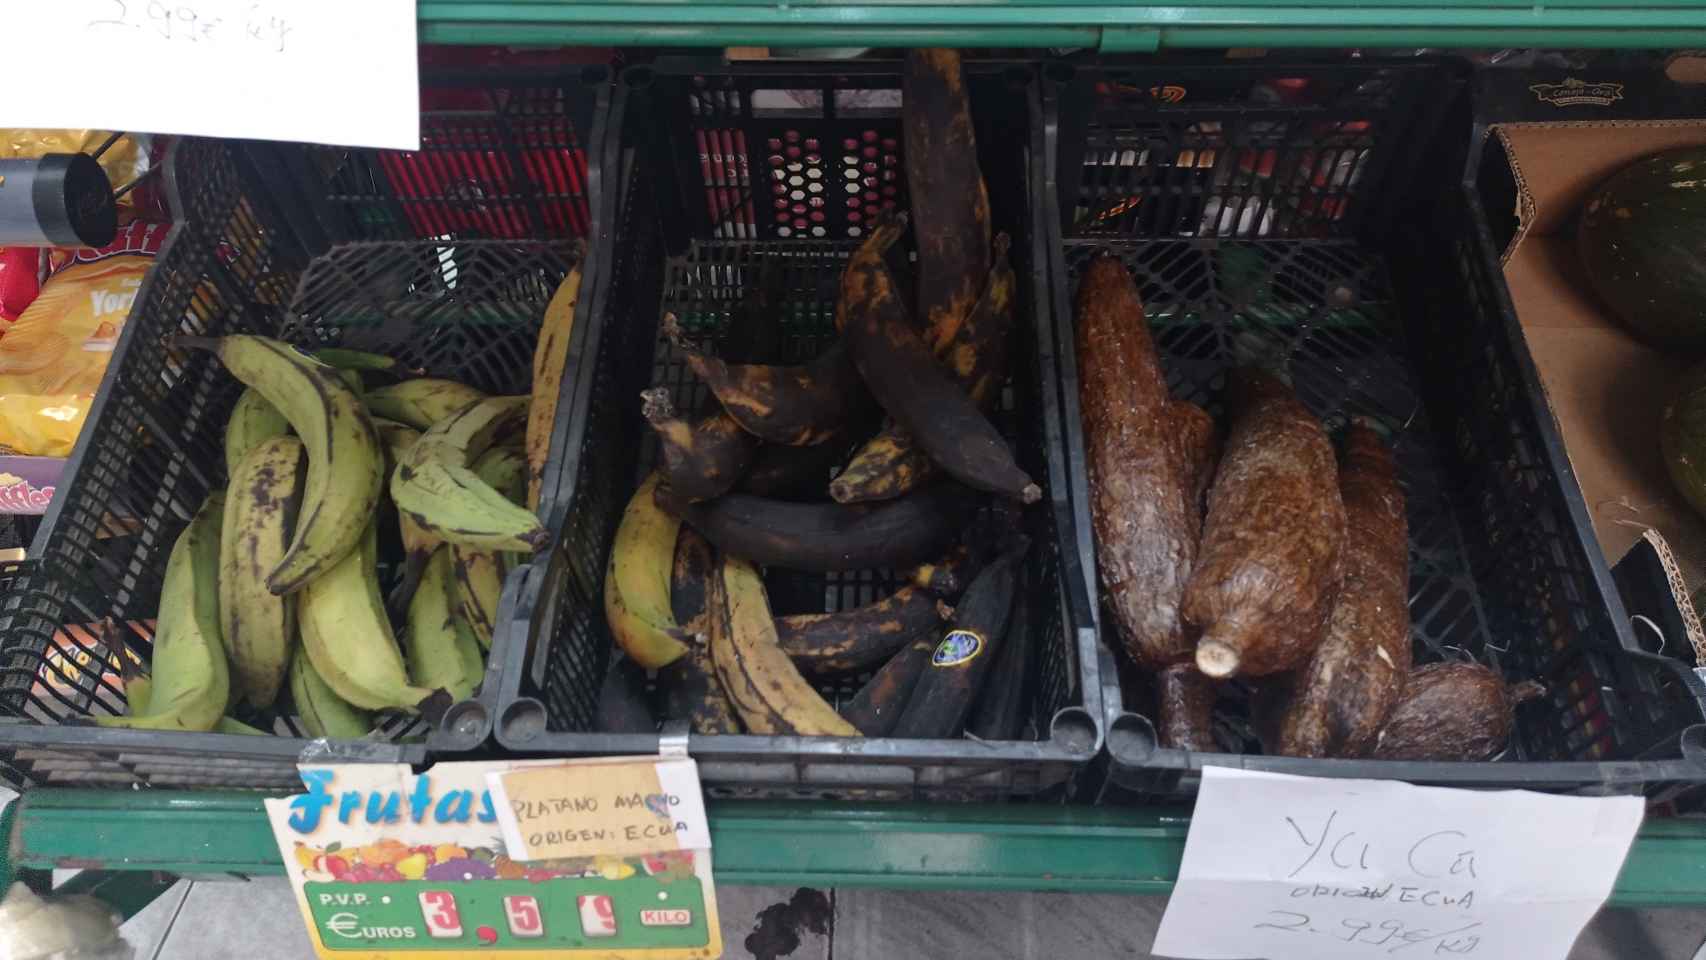 Los plátanos de la frutería regentada por personas de origen chino.